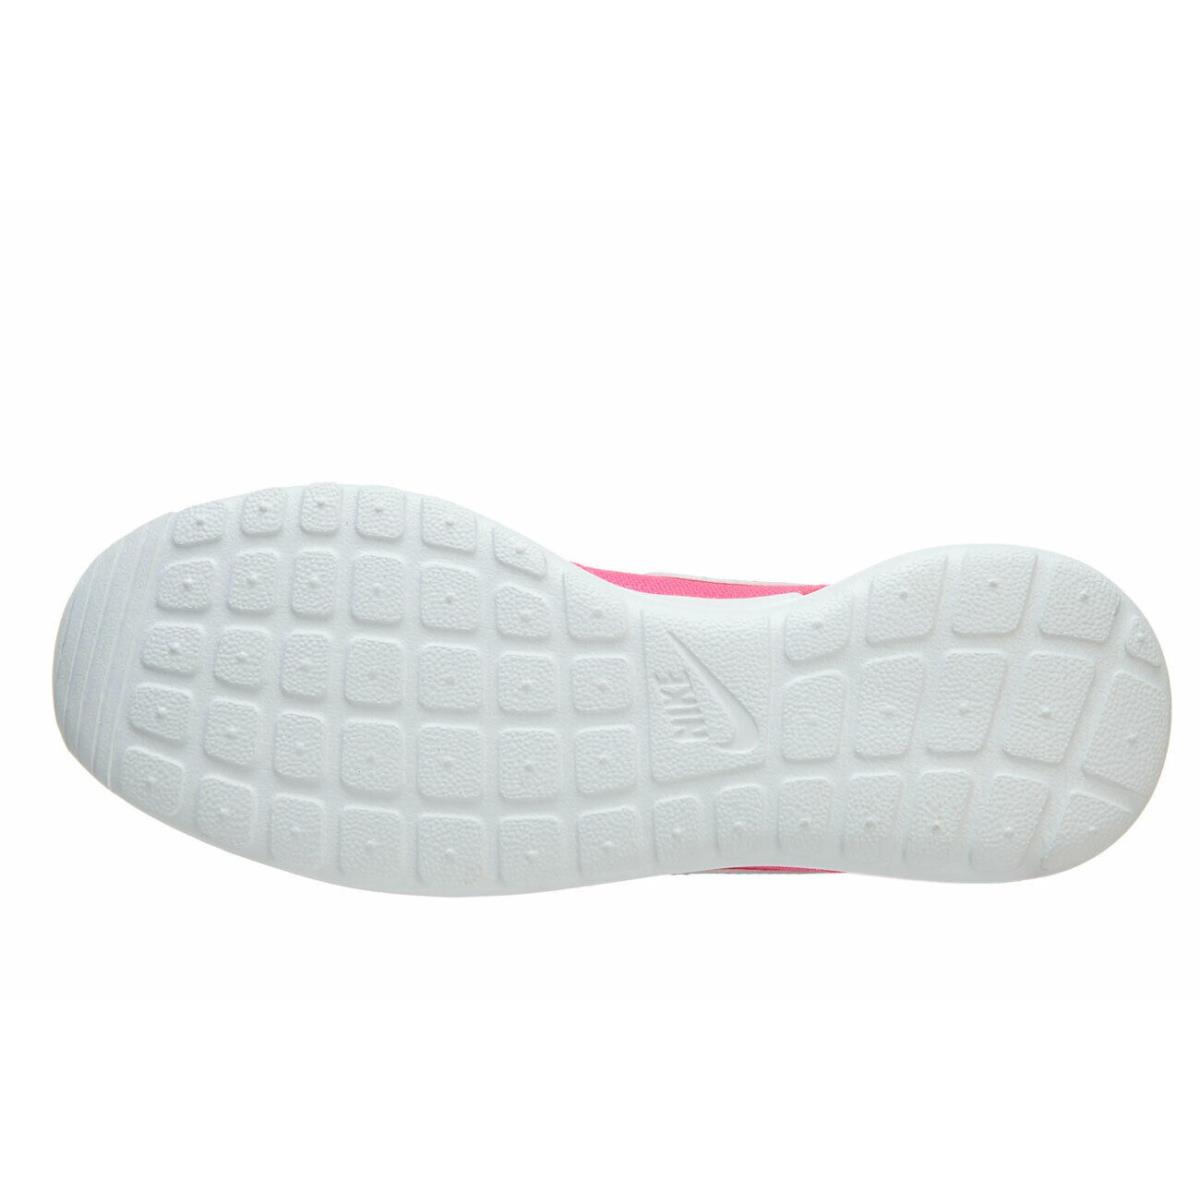 Nike Roshe One GS Hyper Pink Hyper Jade 599729 605 Big Kid`s Sneakers